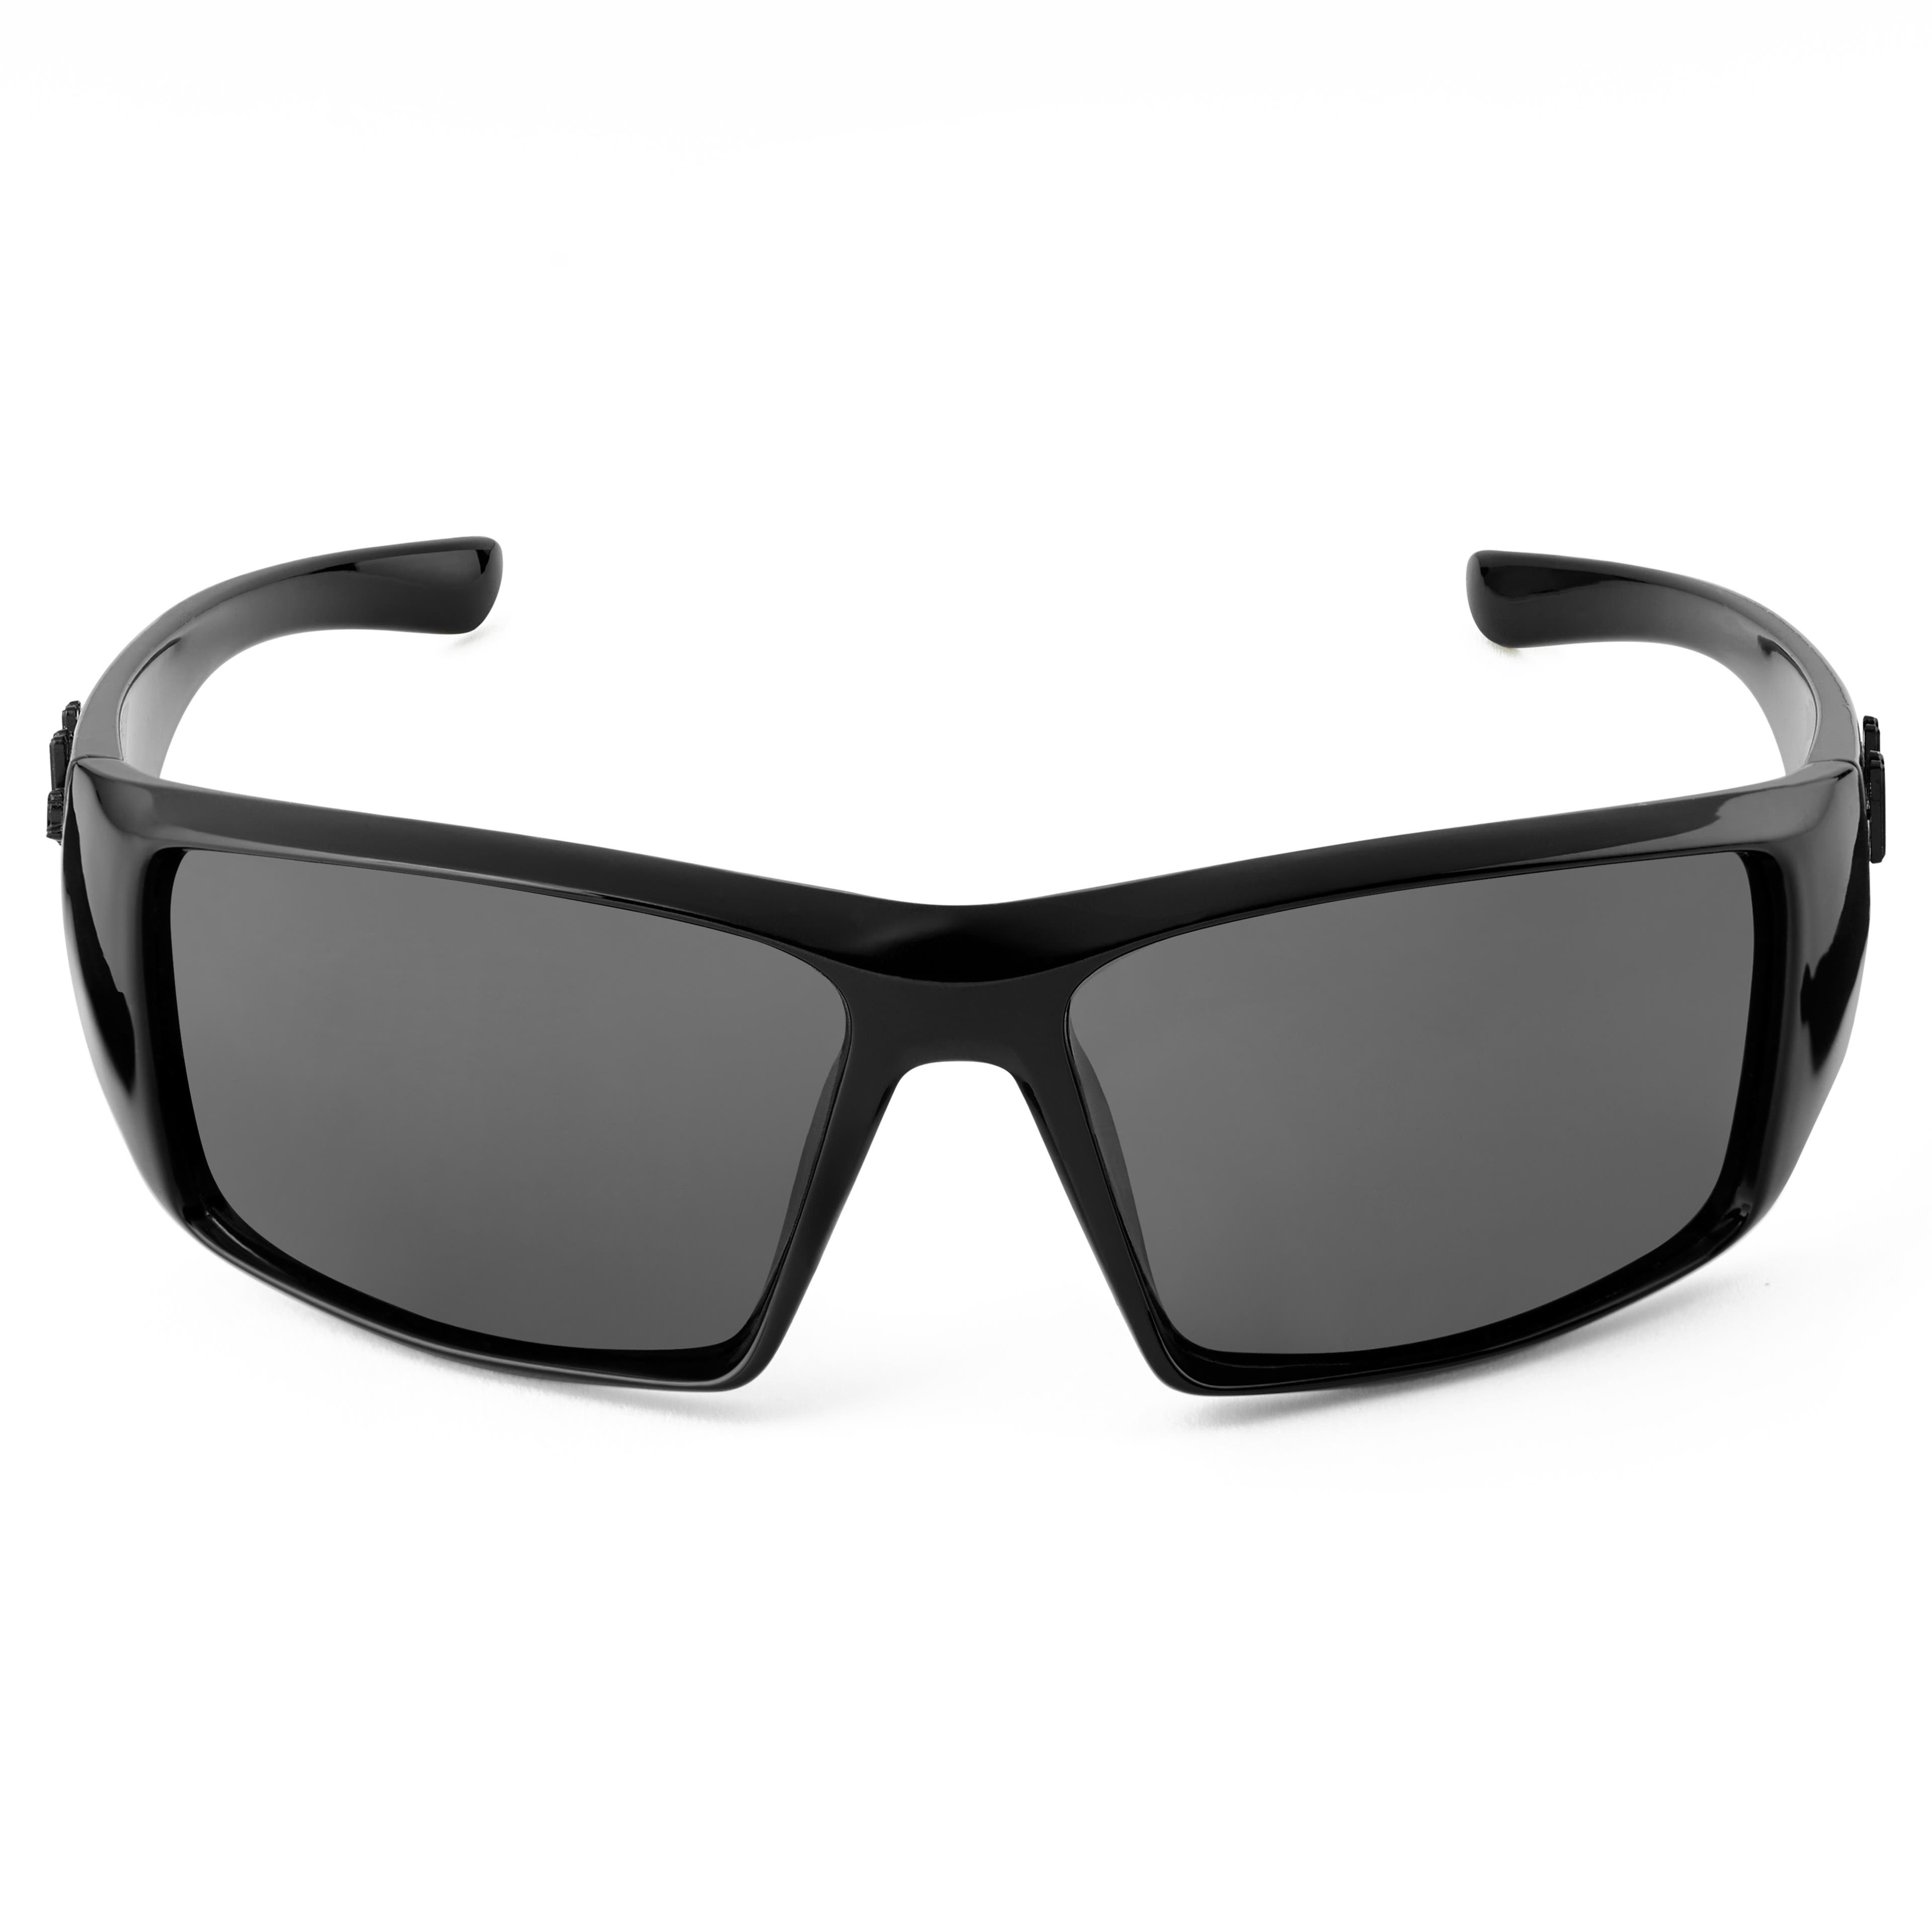 Mick Verge fekete-szürke napszemüveg polarizált lencsékkel - 3.5 kategóriás